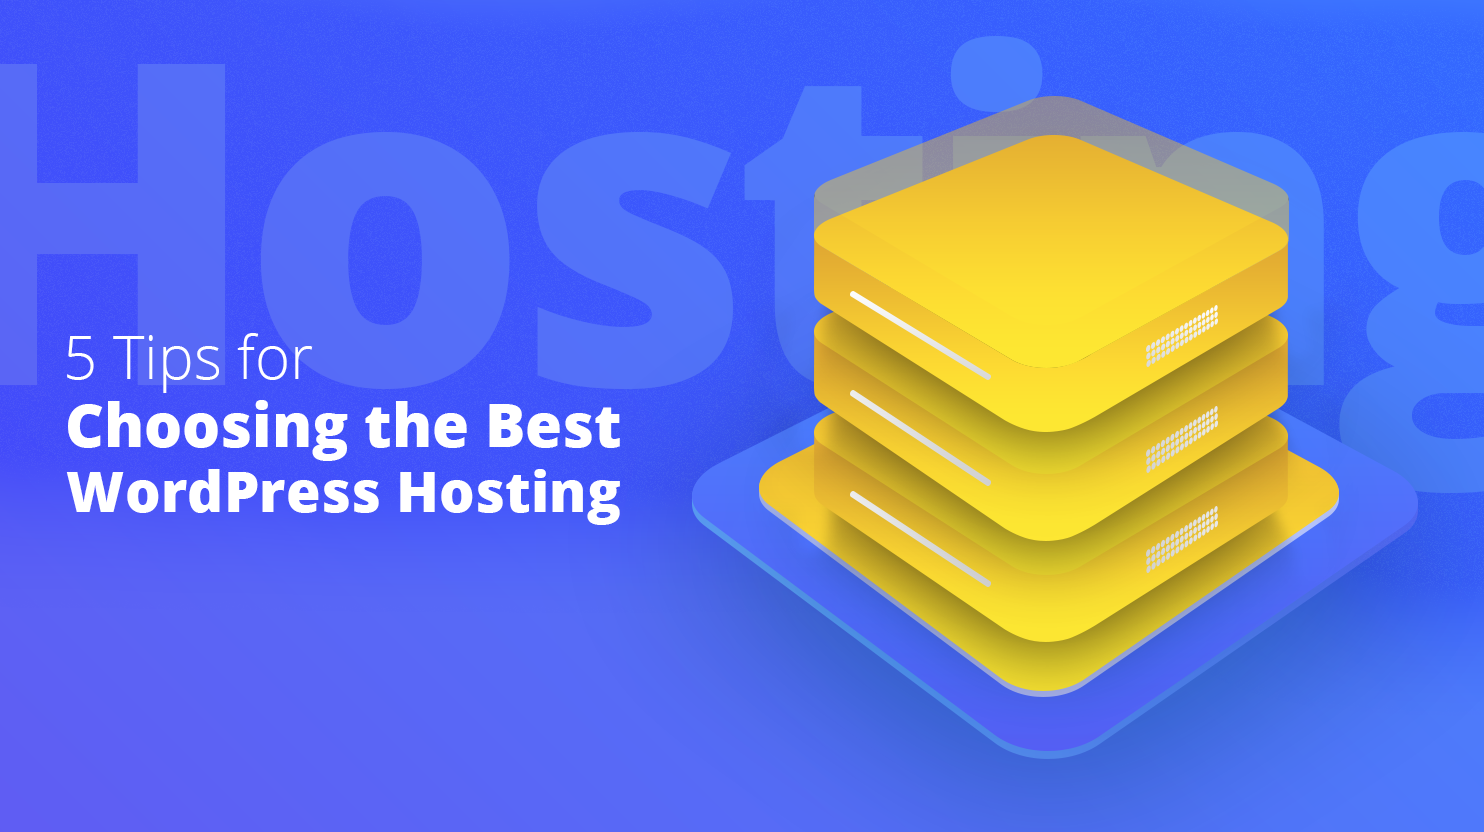 Tips for choosing the best WordPress hosting